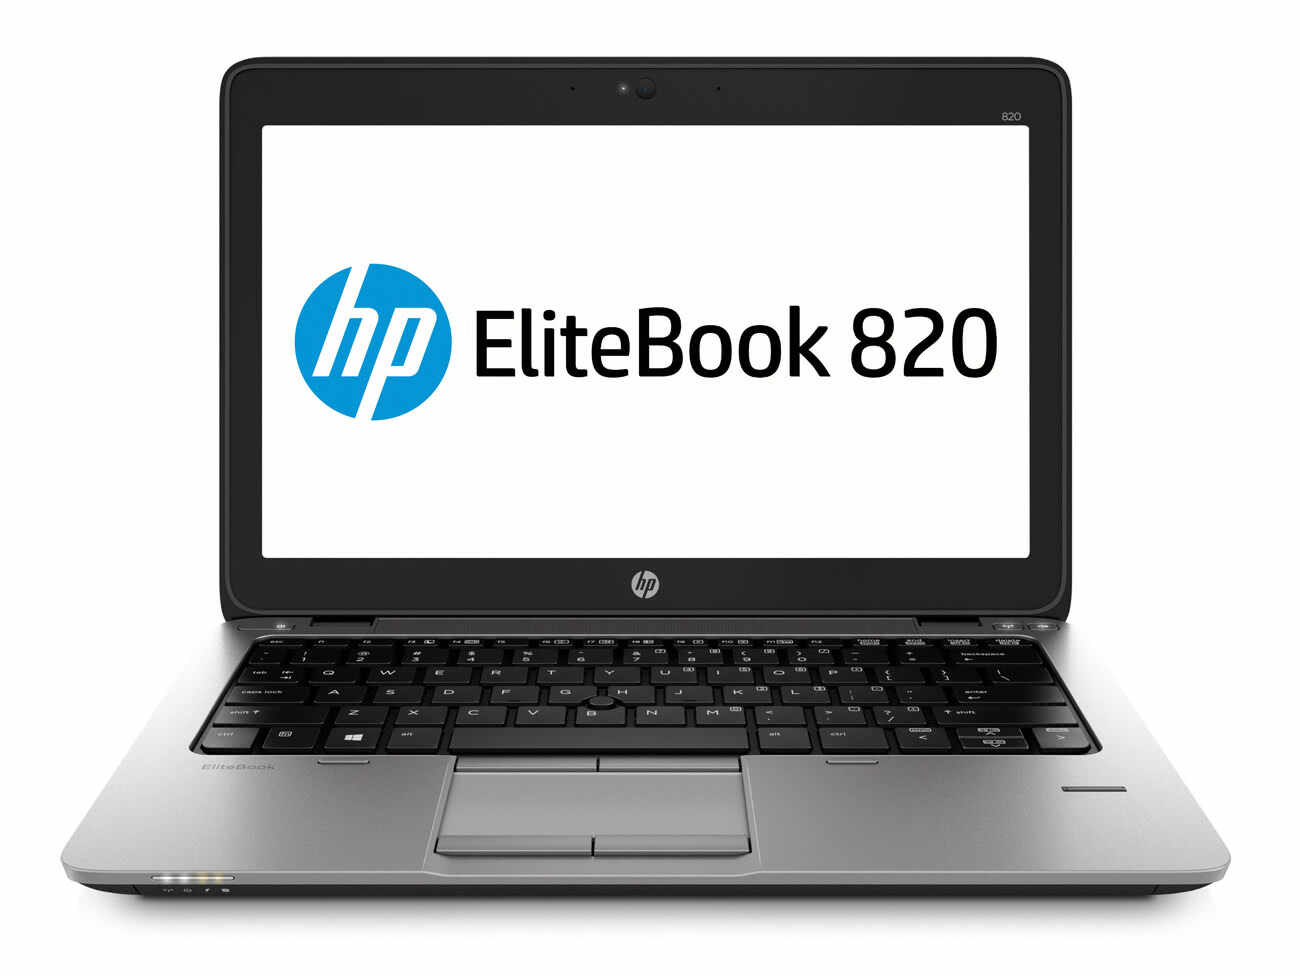 Laptop HP Elitebook 820 G2, Intel Core i7-5600U 2.60GHz, 8GB DDR3, 240GB SSD, 12.5 Inch, Webcam